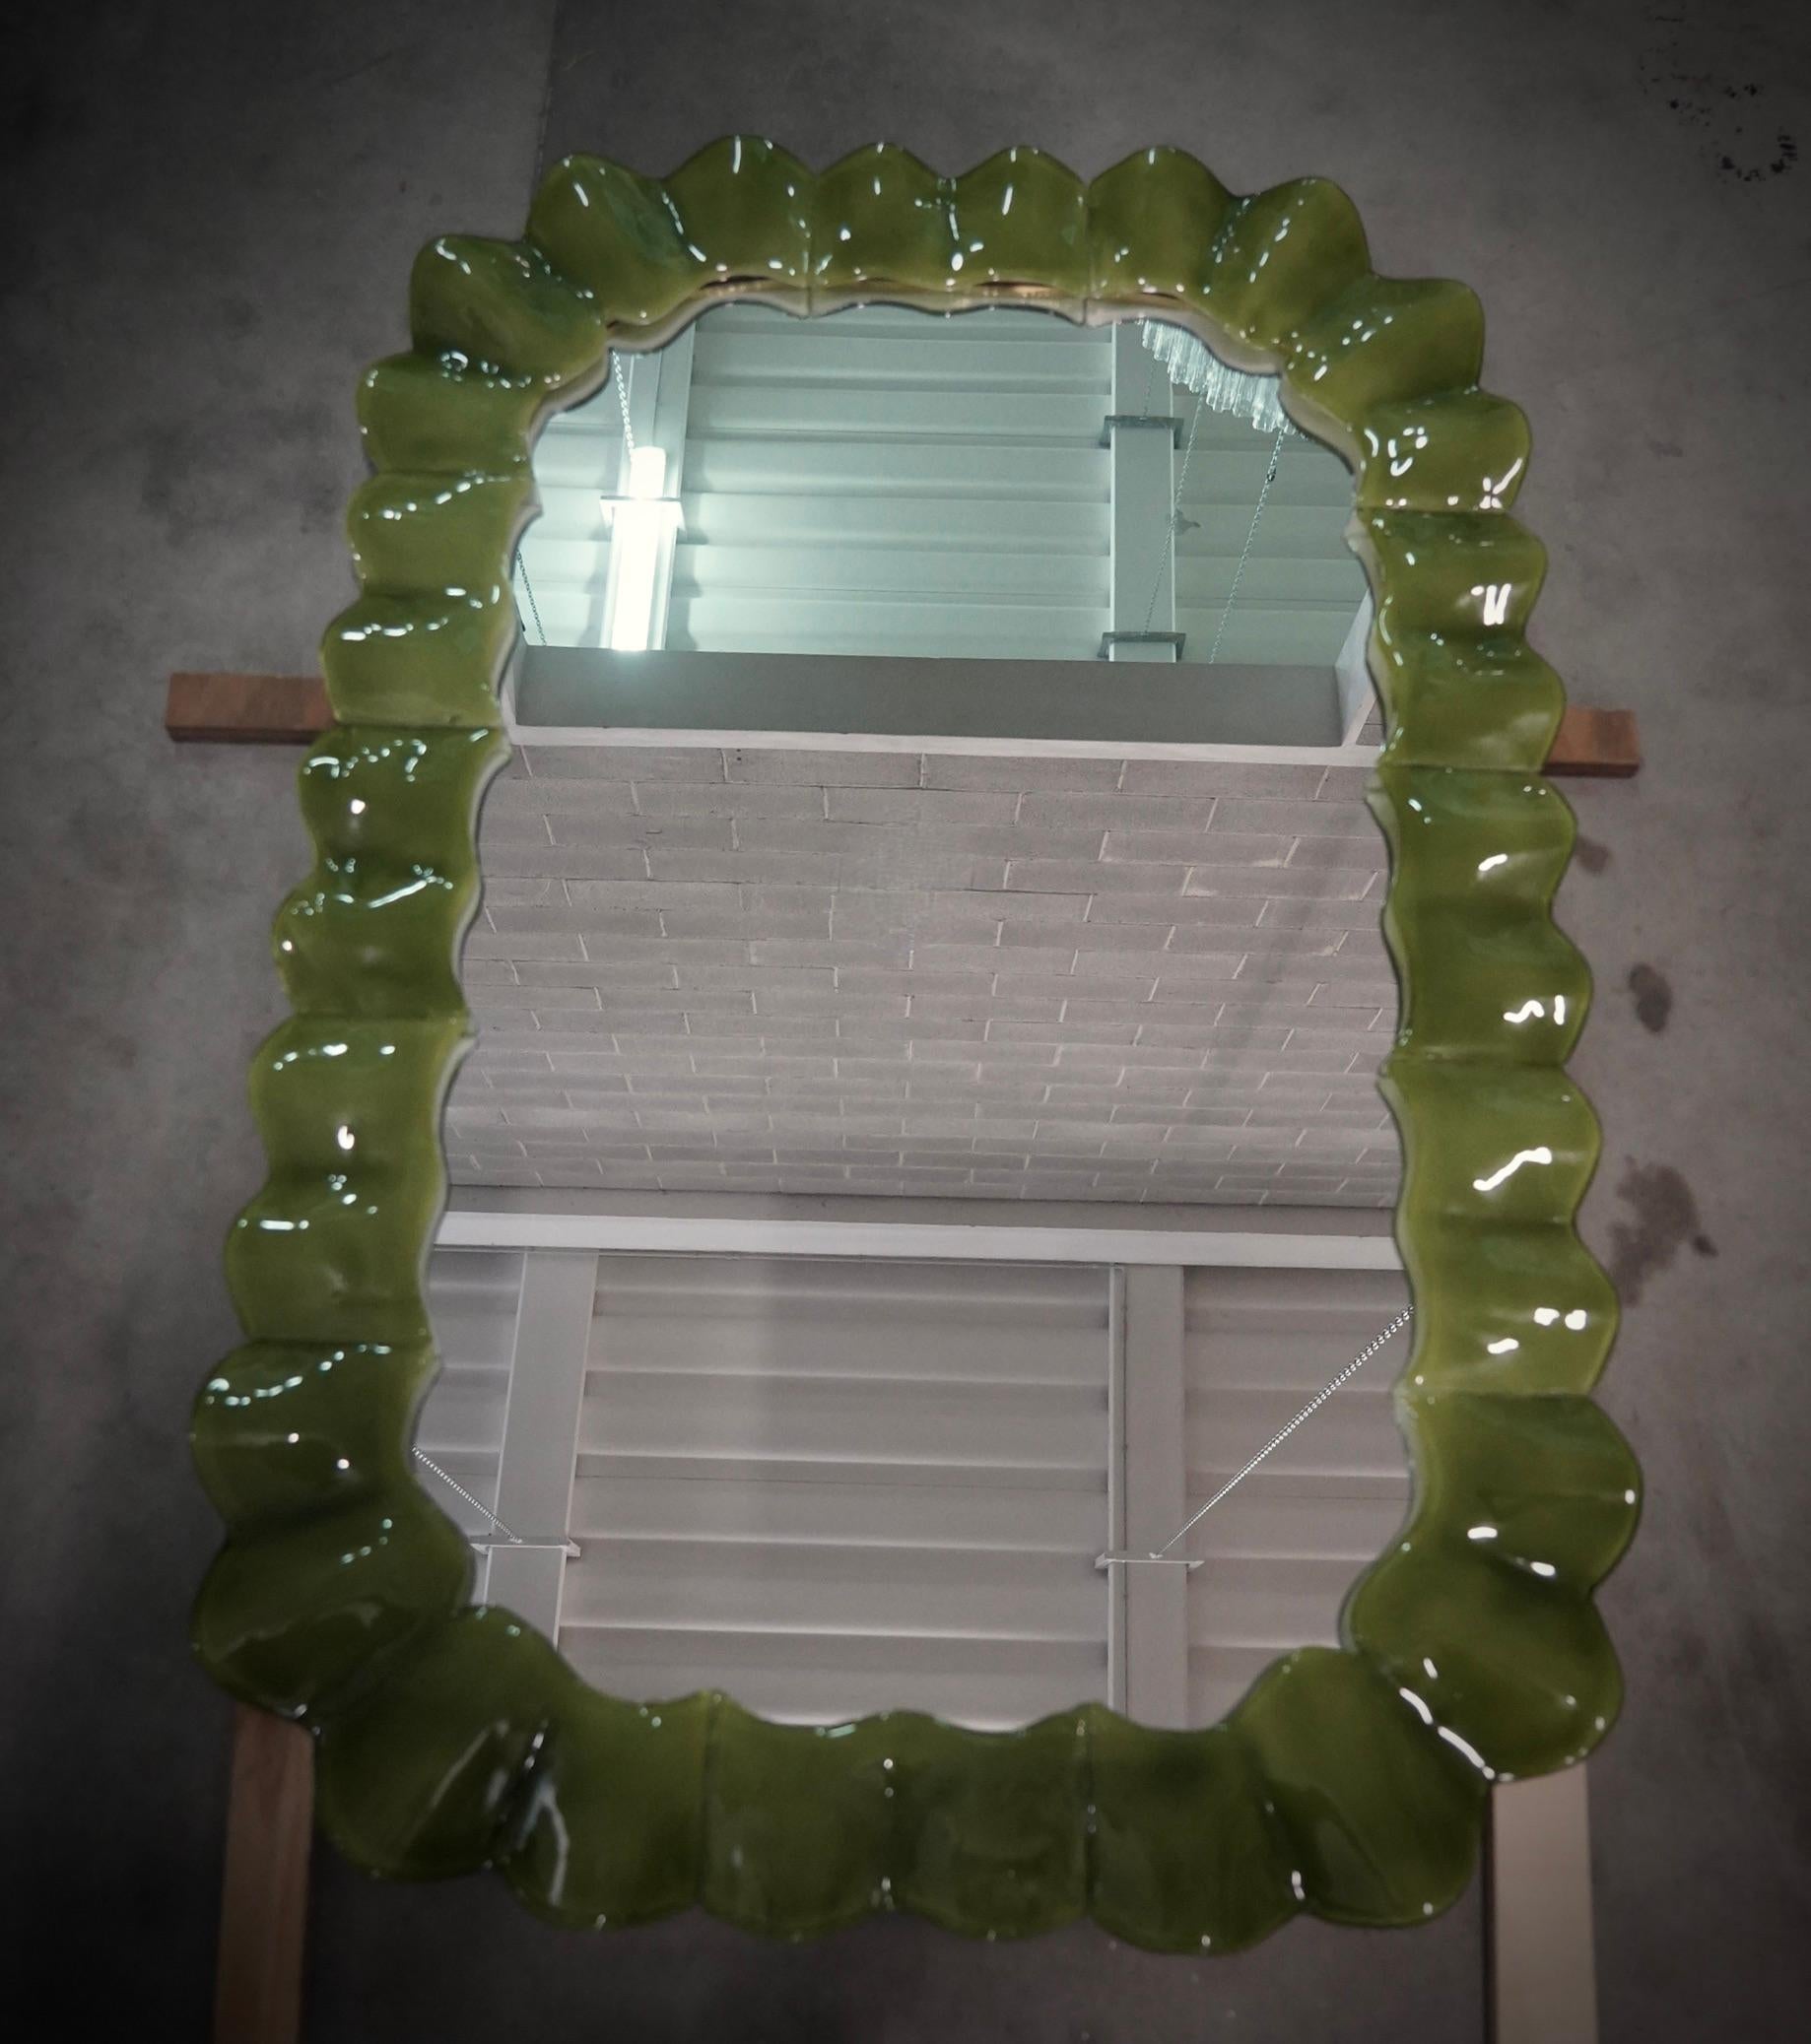 Prächtiger hellgrüner Spiegel aus Murano-Glas. Ein Spiegel, der allein Ihr Zuhause einrichtet. Der reiche, aber geschmackvolle Spiegel hat ein ganz besonderes Design, mit einer sehr schönen Form dieser Glasteile.

Der Spiegel hat eine hölzerne